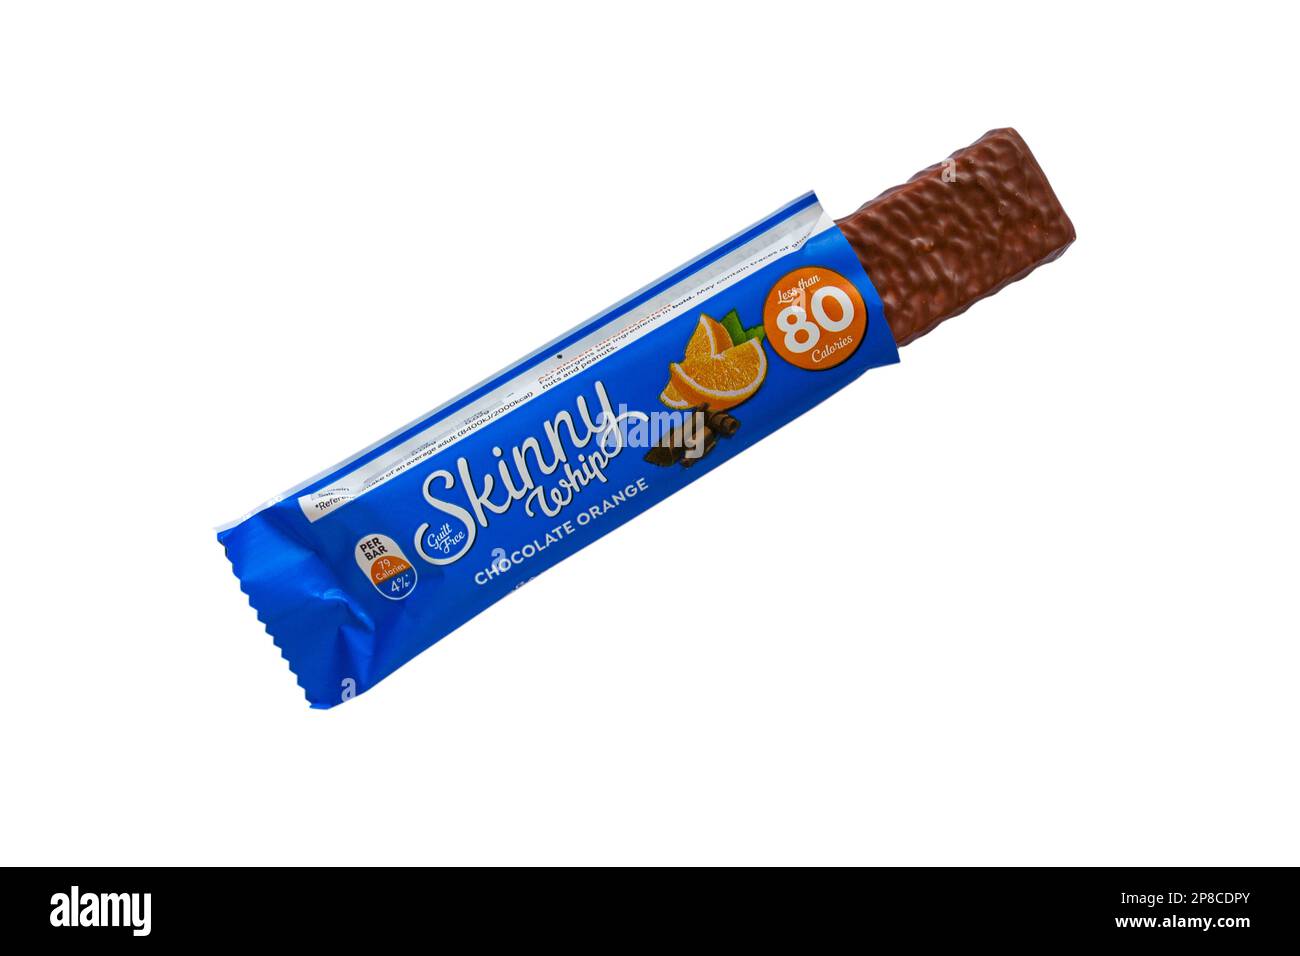 Sans culpabilité Skinny whip chocolat orange snack bar haut en fibres moins de 80 calories ouvert pour montrer le contenu isolé sur fond blanc Banque D'Images